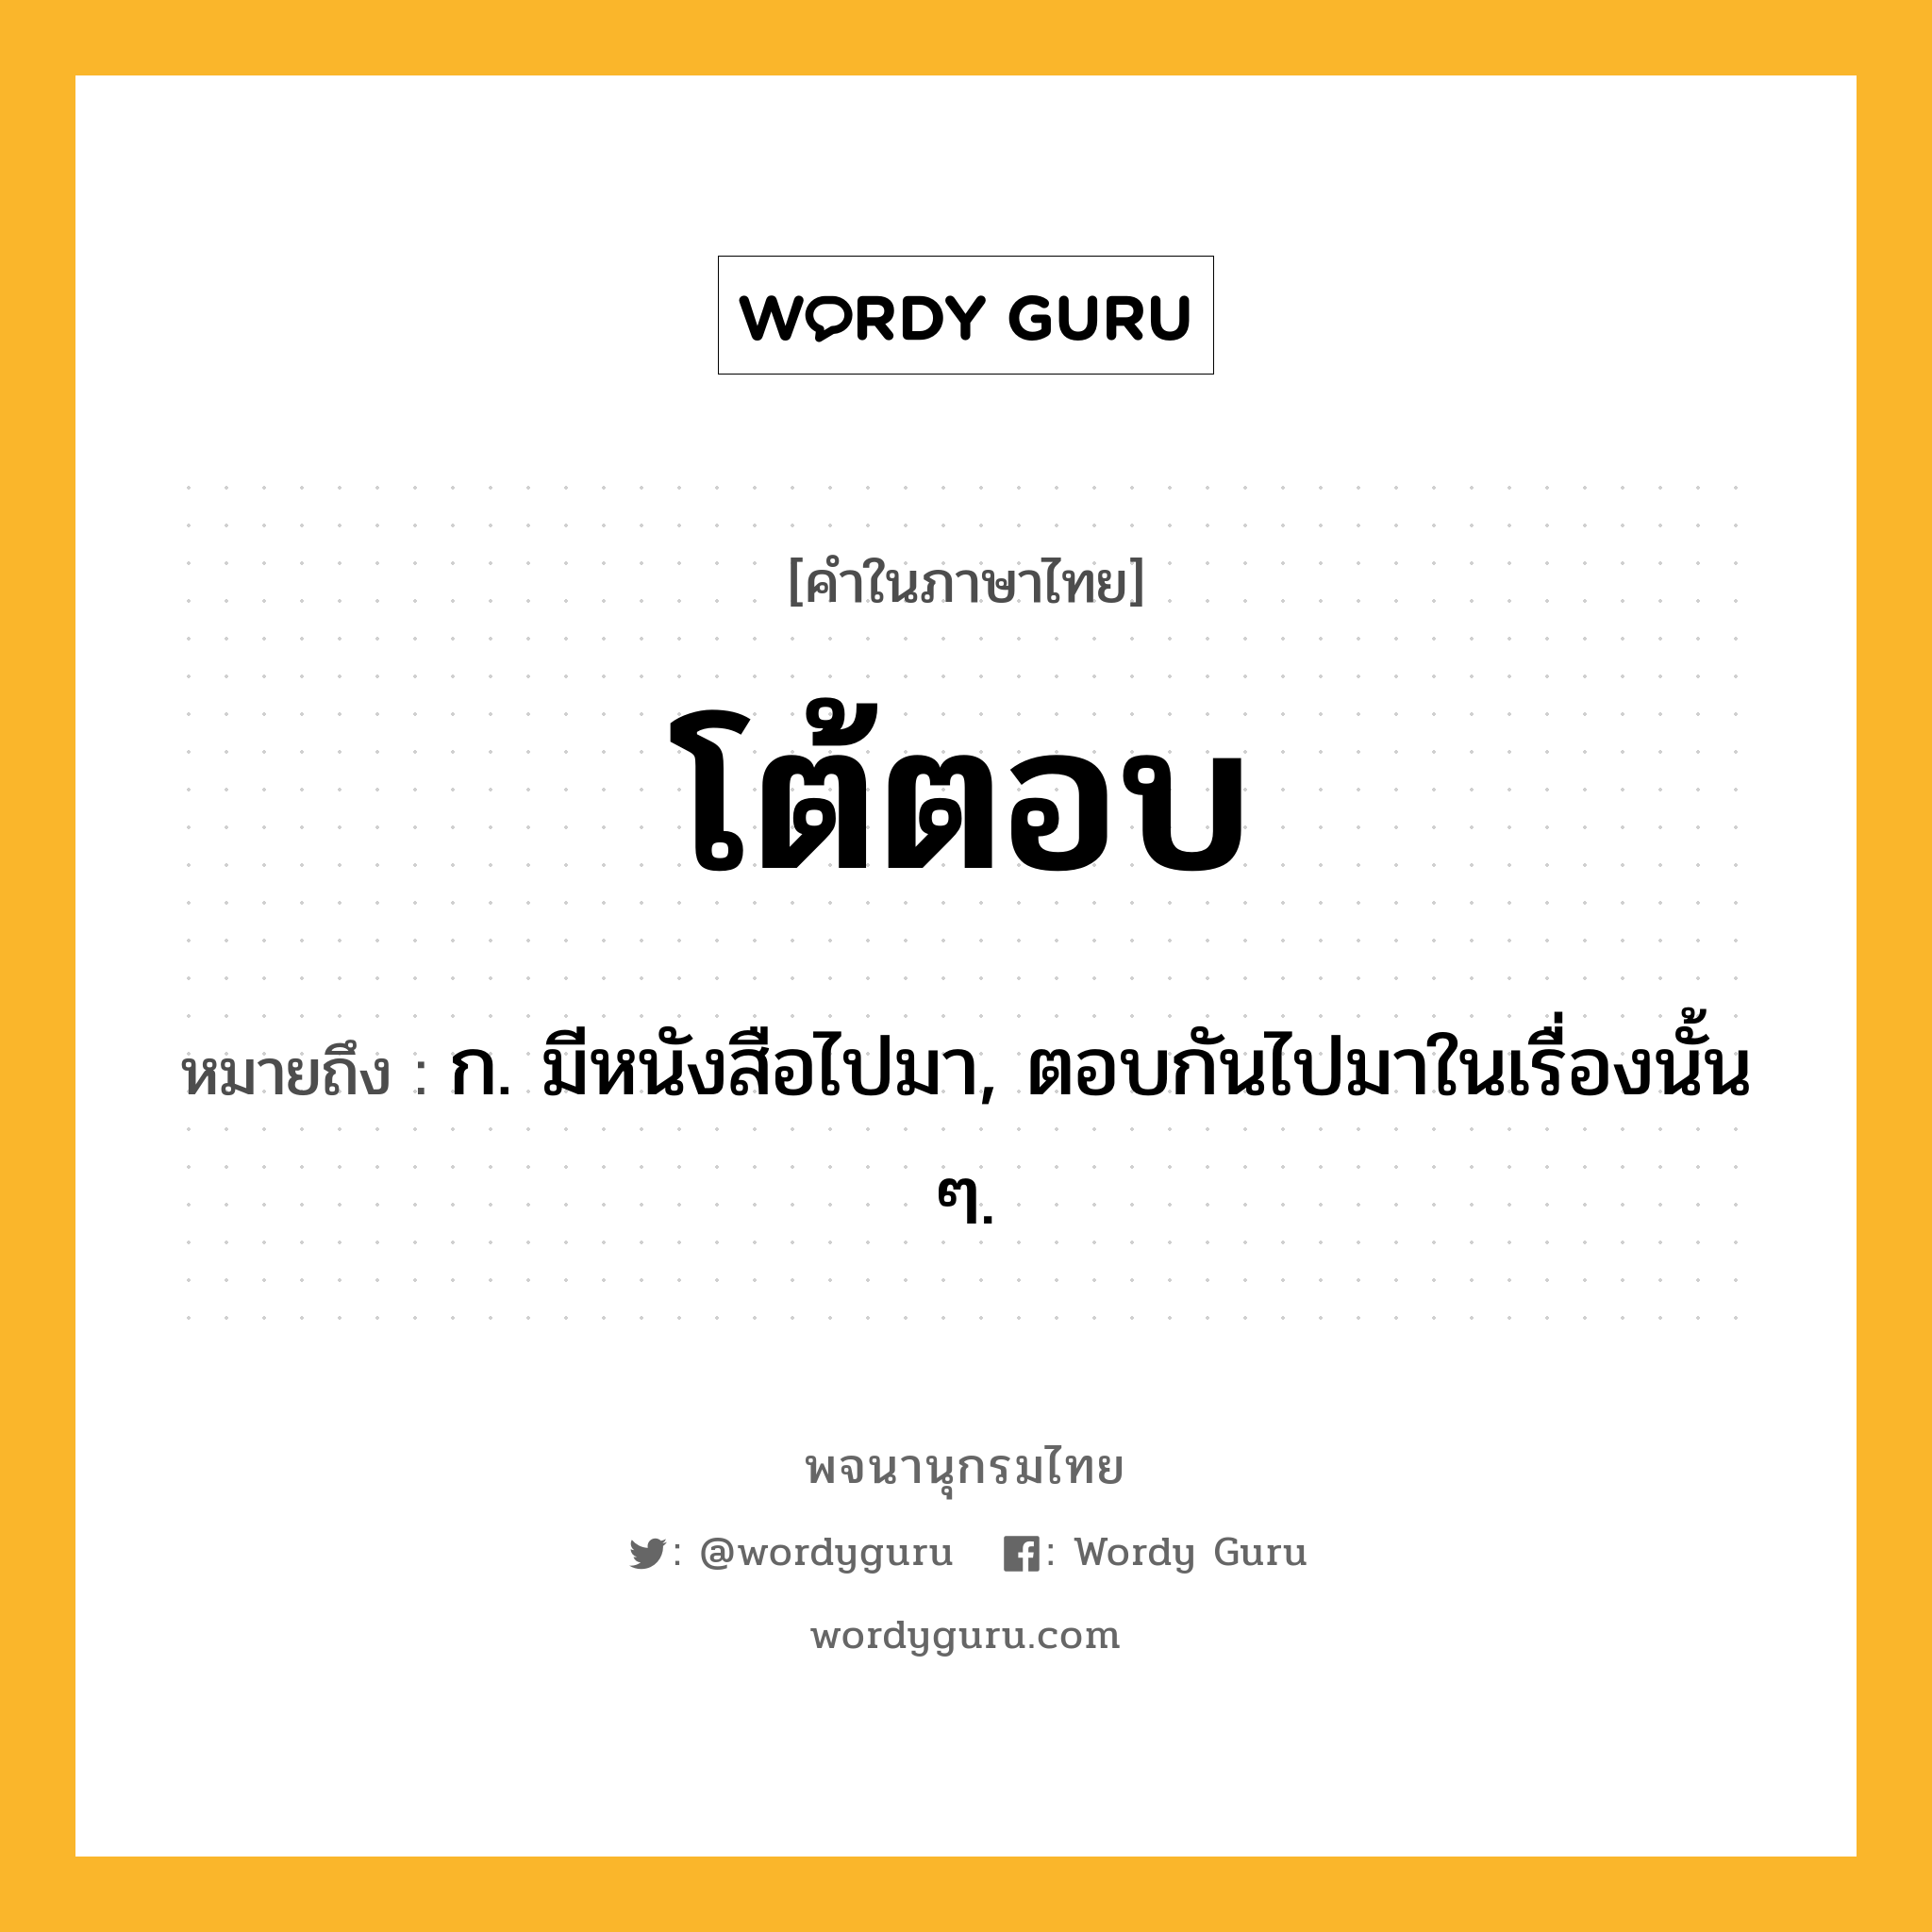 โต้ตอบ หมายถึงอะไร?, คำในภาษาไทย โต้ตอบ หมายถึง ก. มีหนังสือไปมา, ตอบกันไปมาในเรื่องนั้น ๆ.